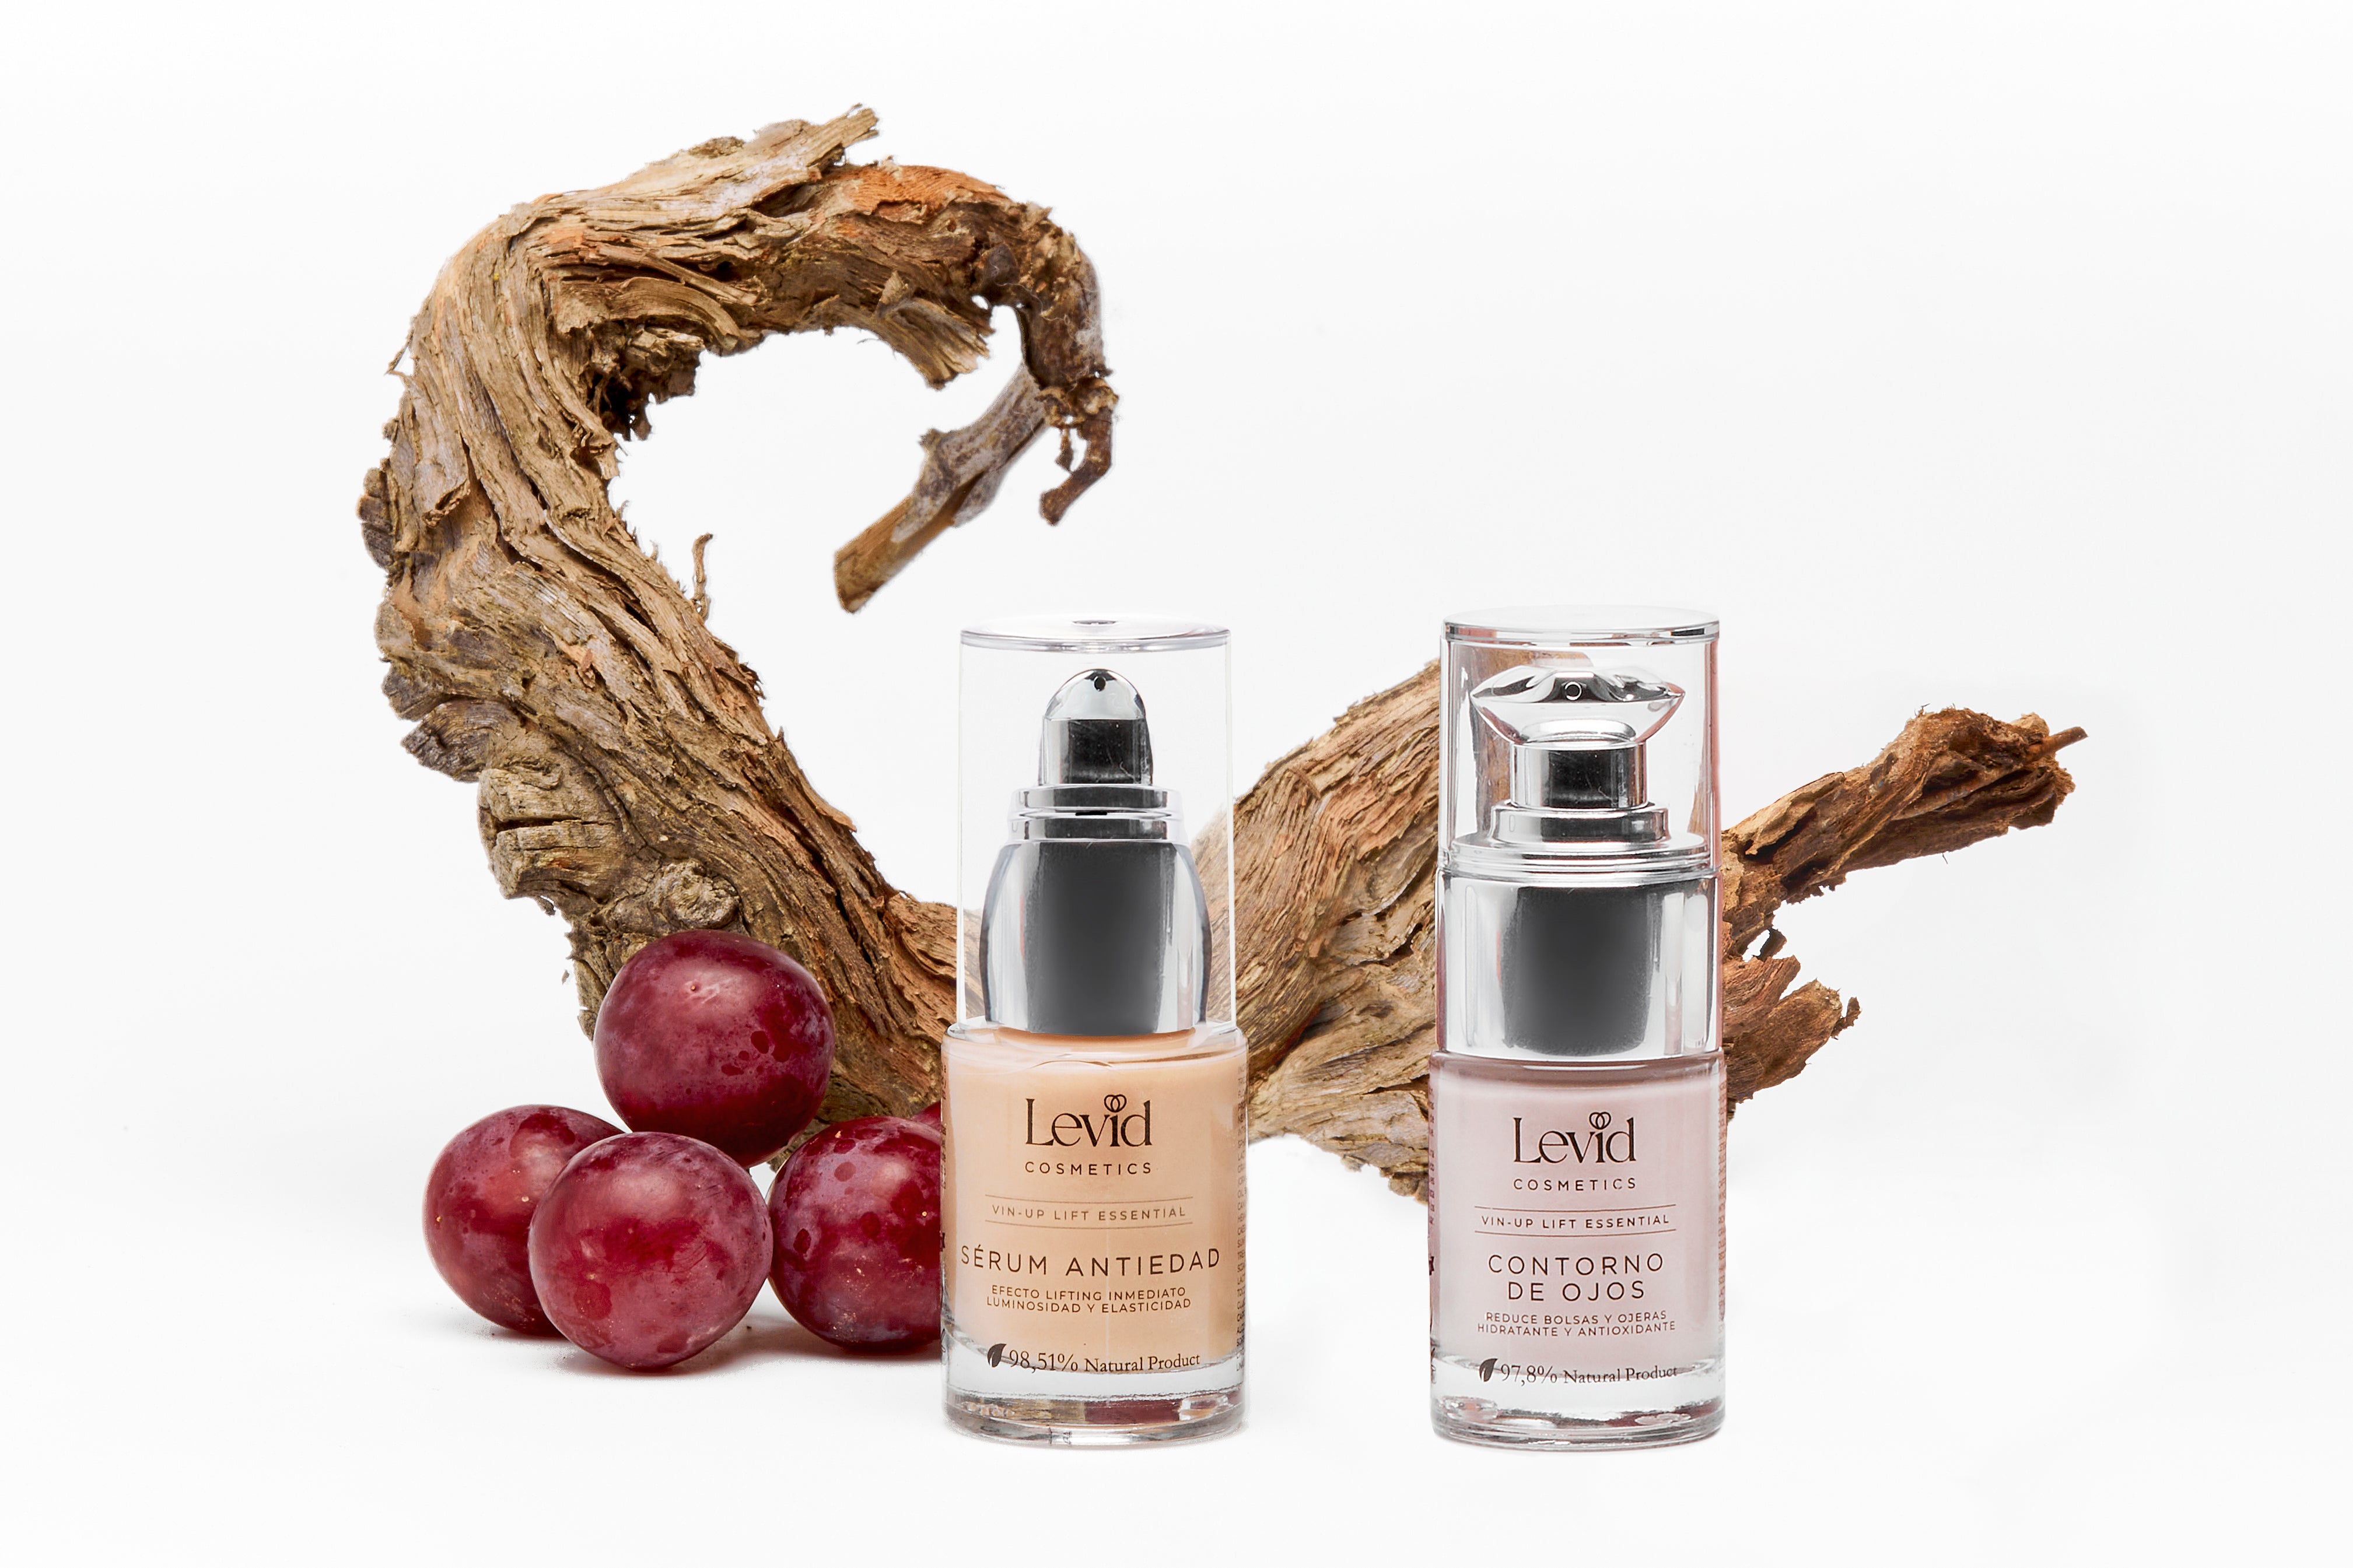 Pack cosmética premium con alta concentración en principios activos - Levid Cosmetics